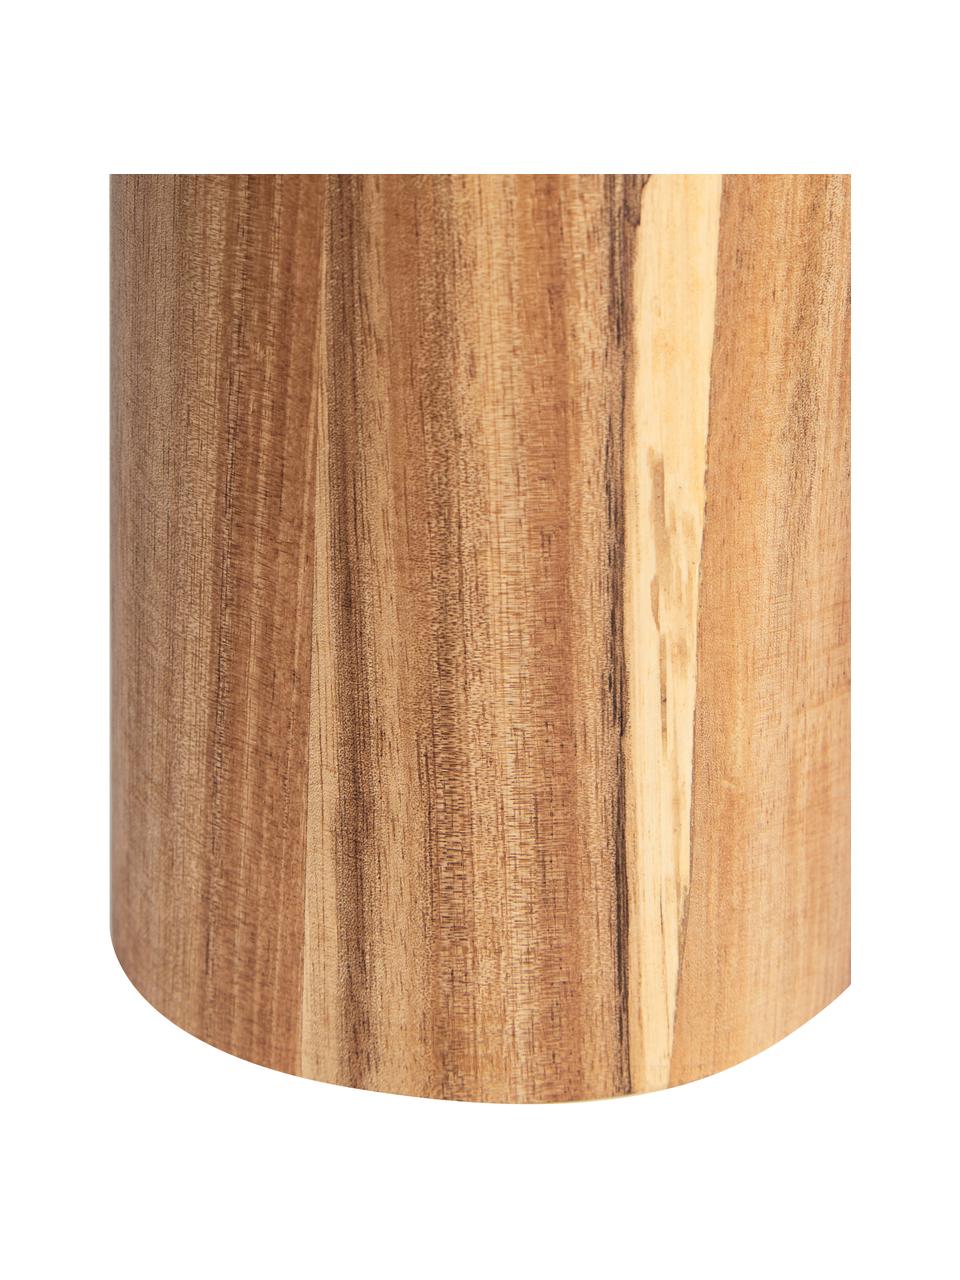 WC kartáč z akáciového dřeva Wood, Akáciové dřevo, stříbrná, Ø 10 cm, V 36 cm